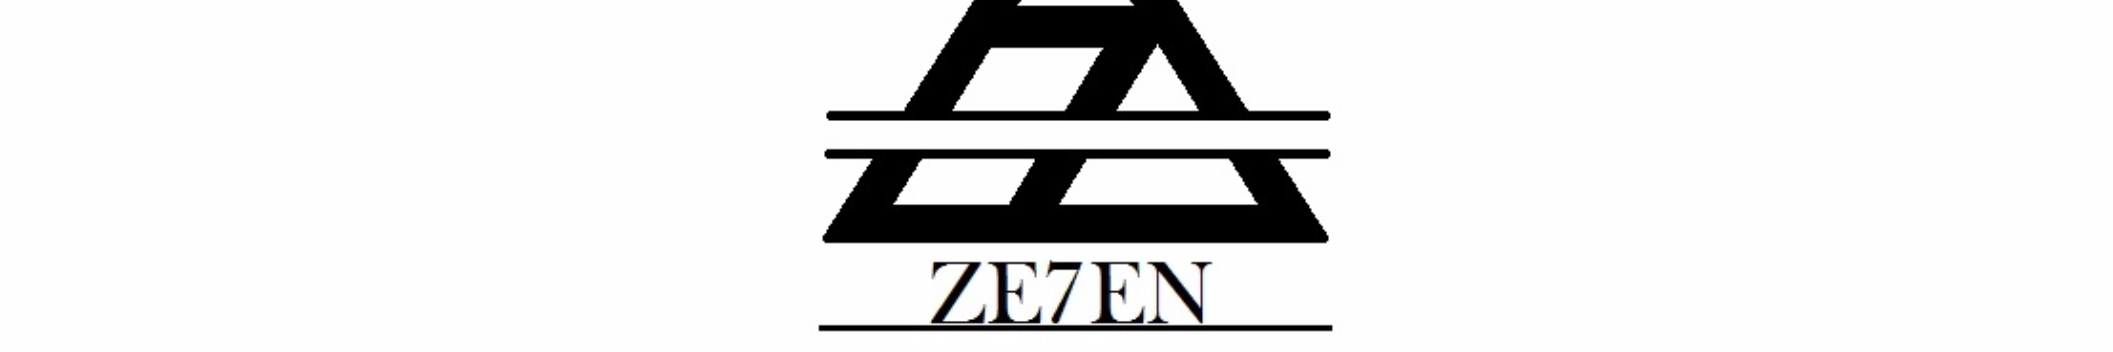 ZE7EN